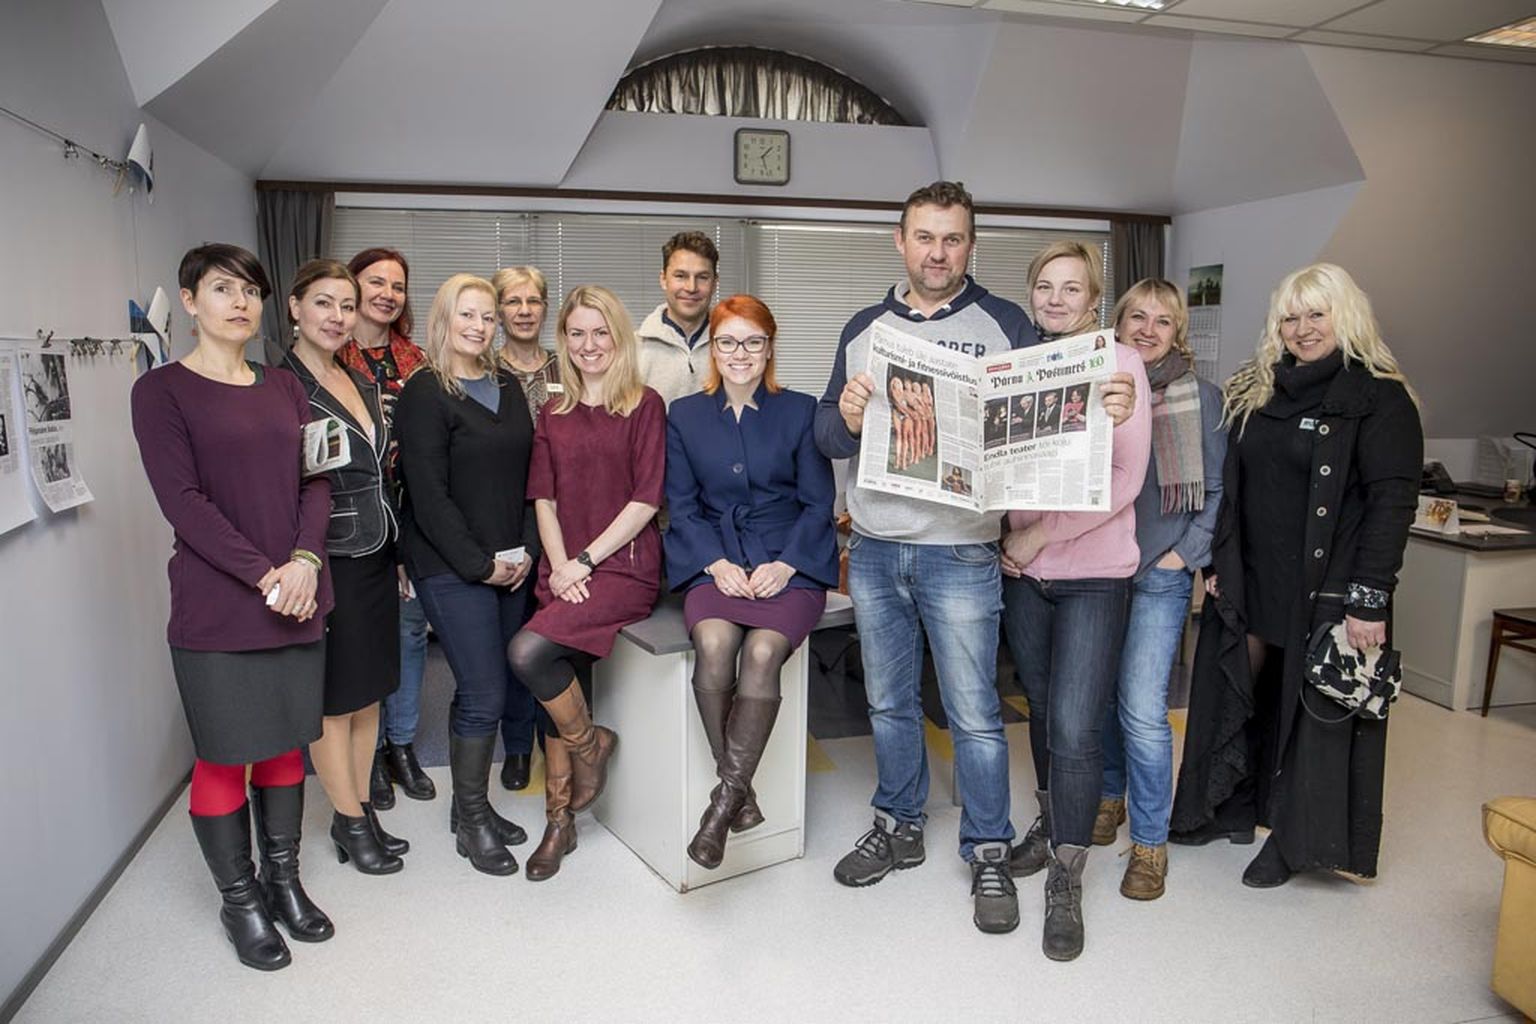 Jaanuari lõpus esimesel MTÜ juhtide koolitusel kõnelesid ajakirjanikud Kadrin Karner ja Birjo Must, et ajakirjanik ei ole luupainaja, vaid sõber. Koolituspäeva käigus külastati Pärnu Postimehe toimetust.